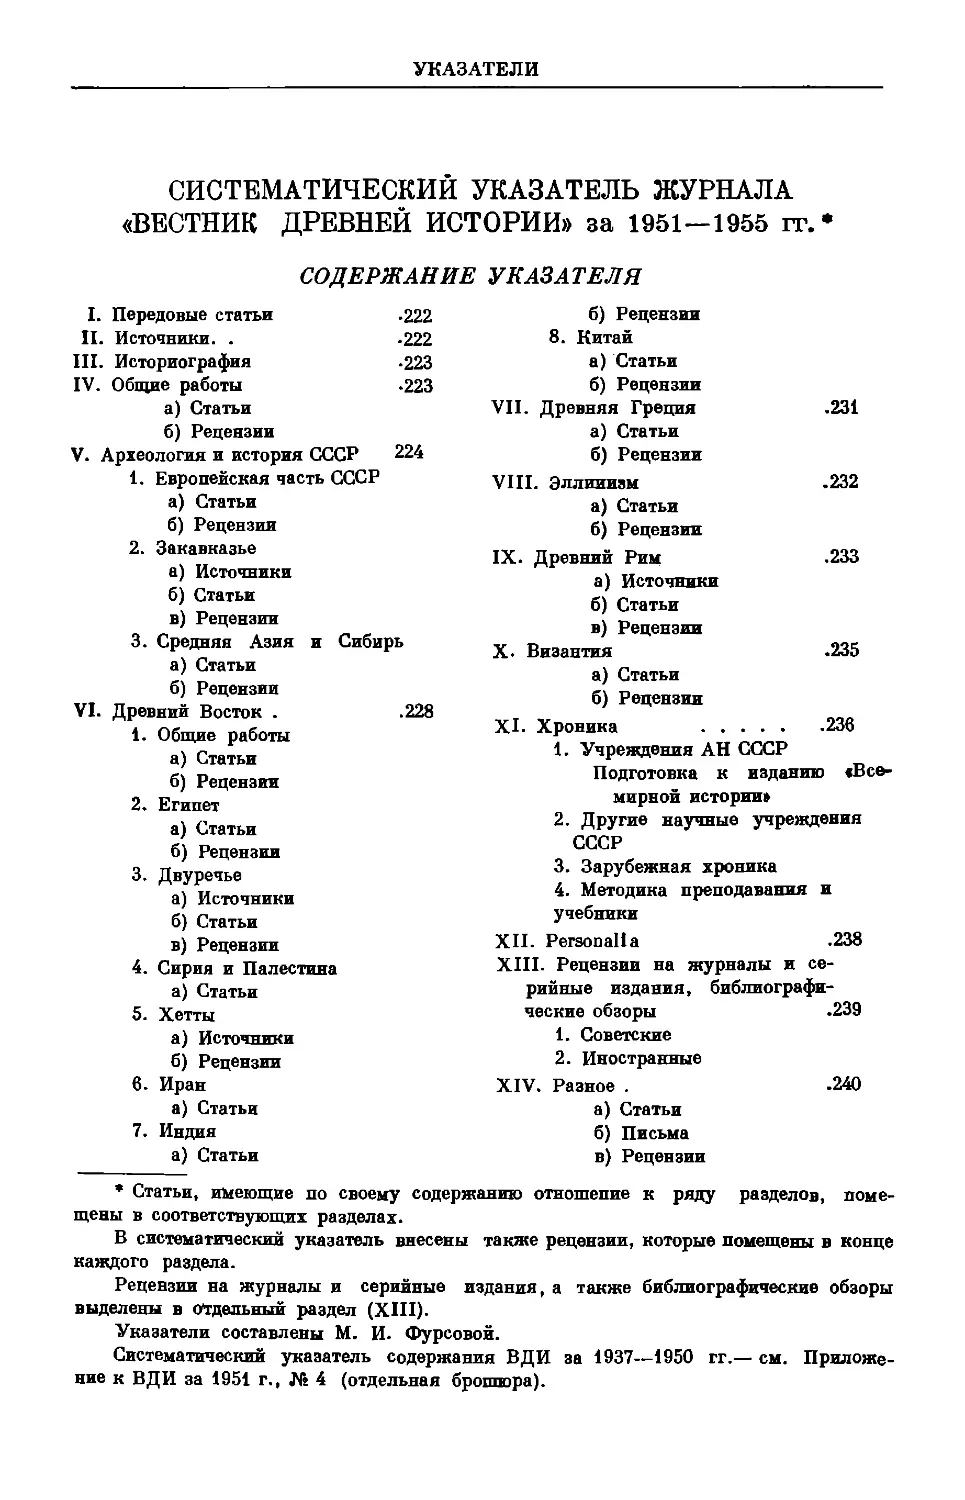 Систематический указатель журнала «Вестник древней истории» за 1951—1955 гг.